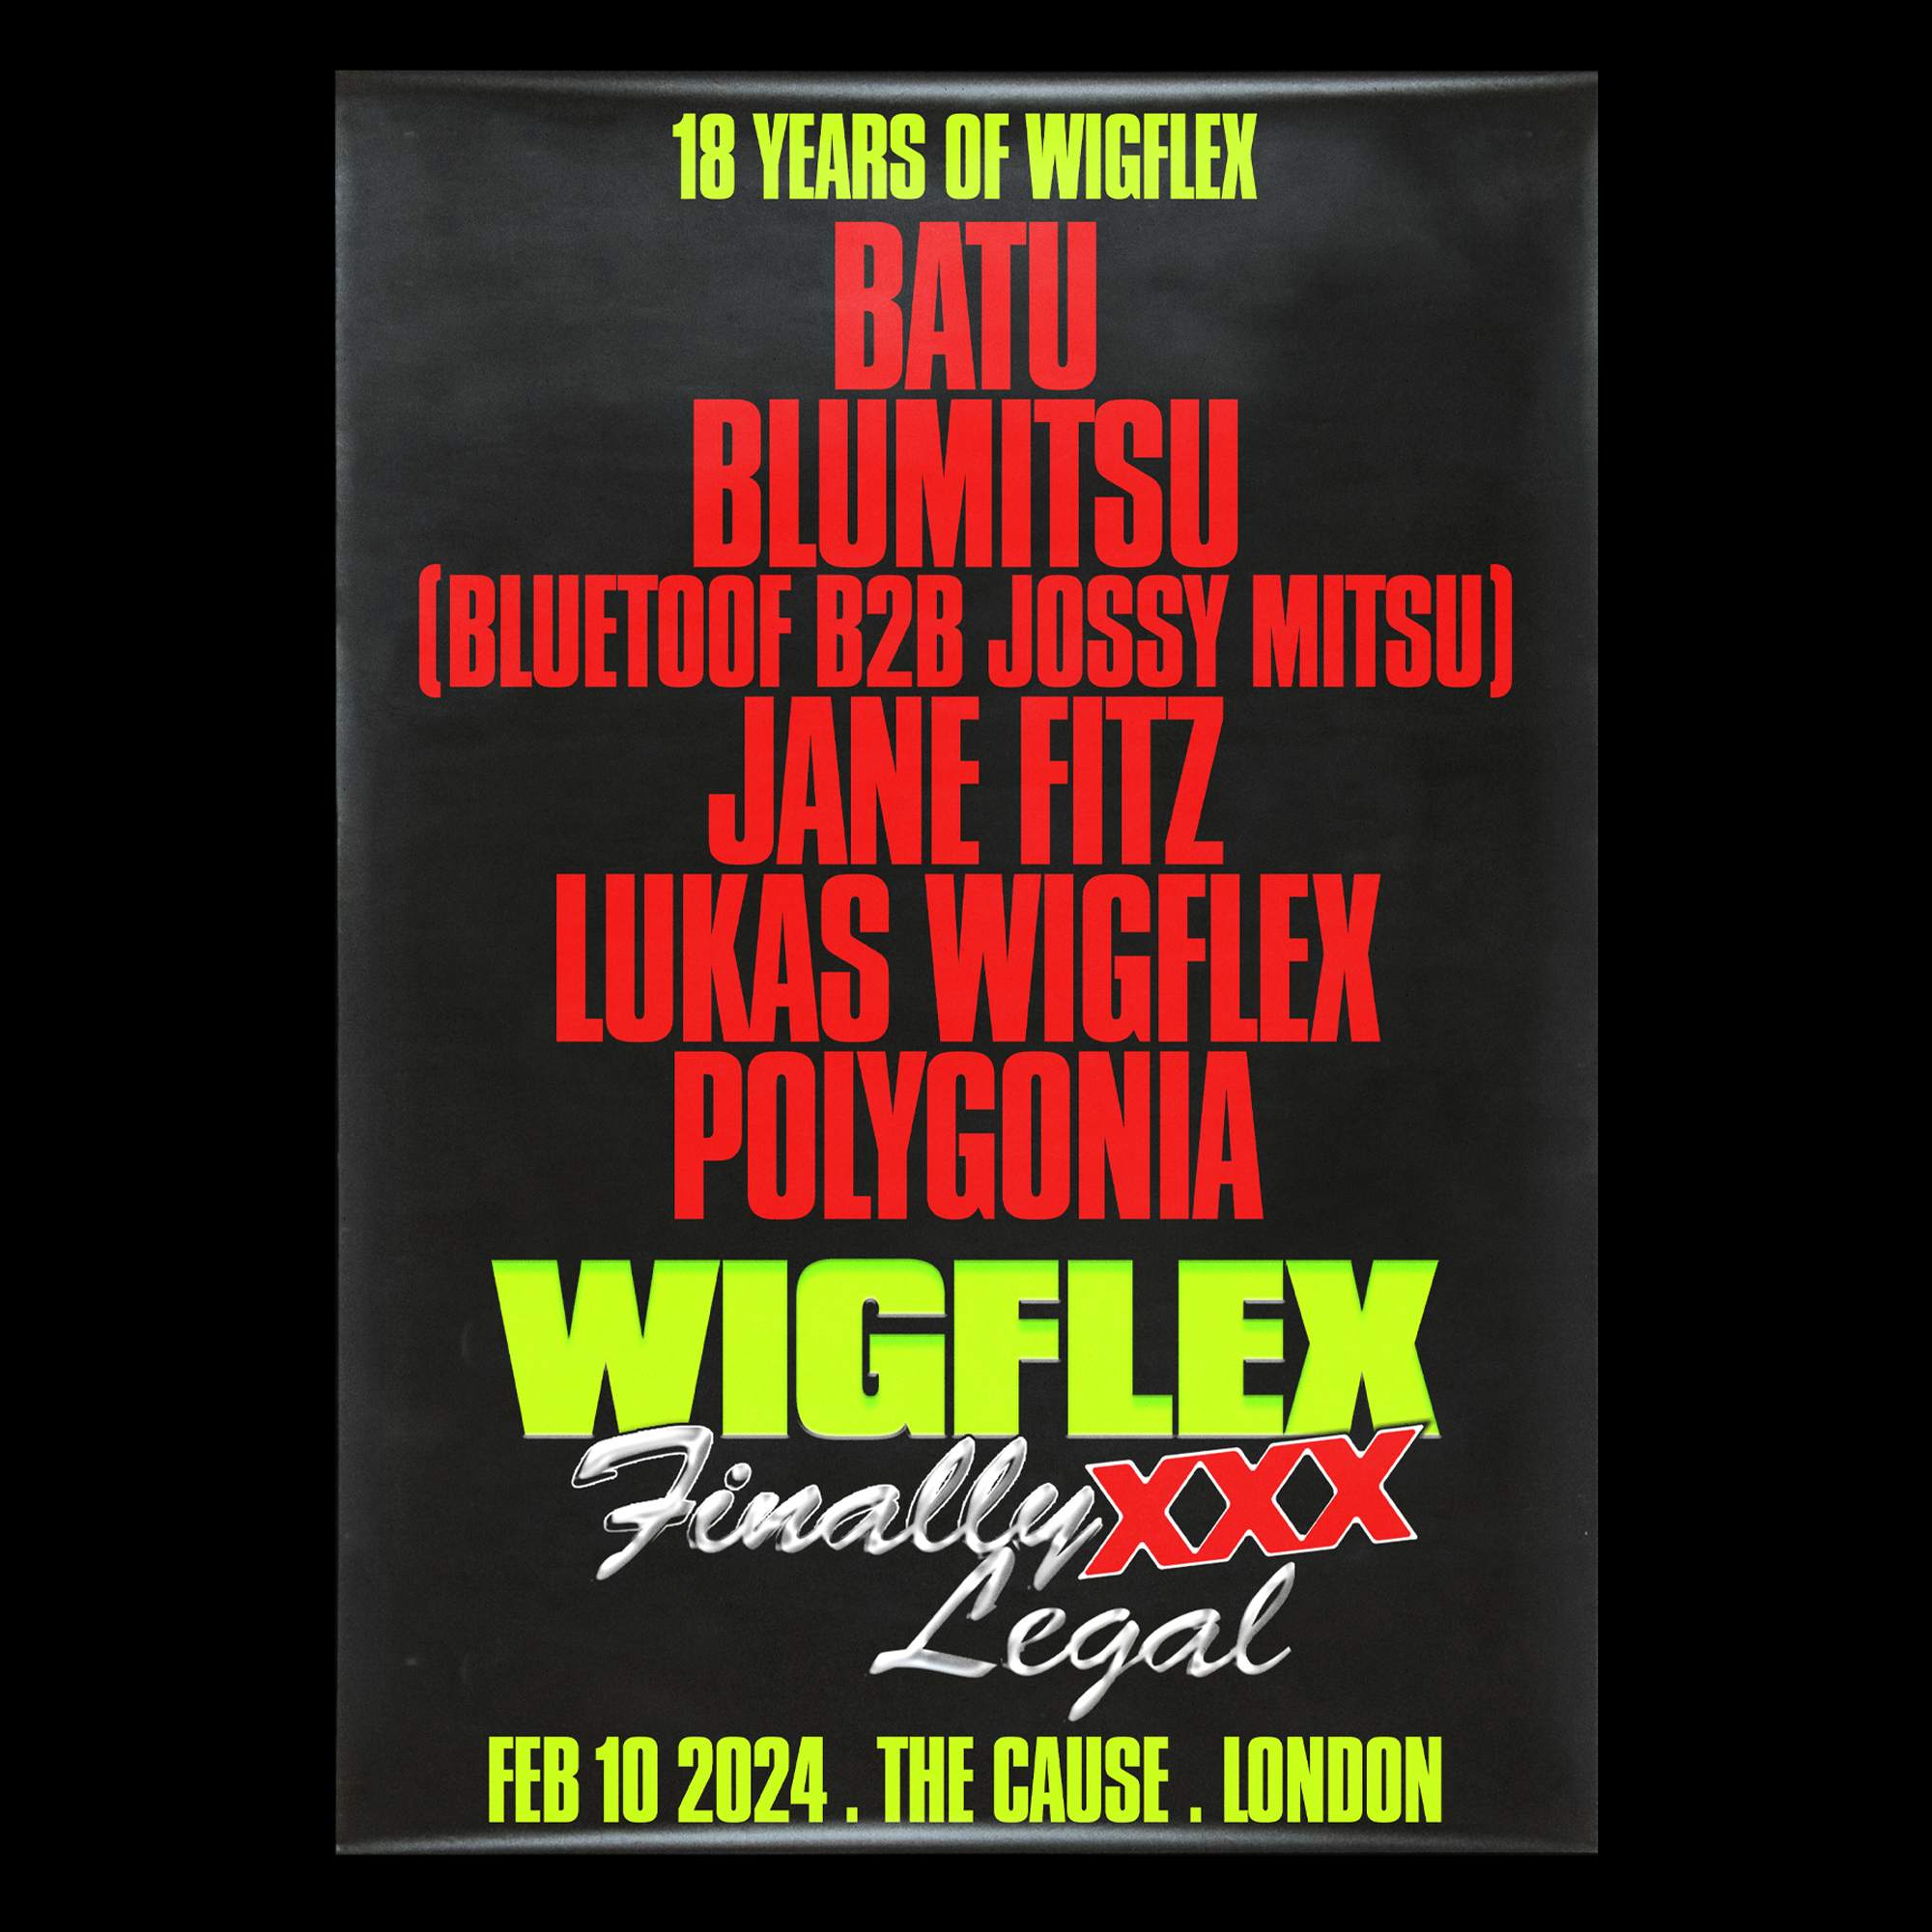 Wigflex 18th Birthday: Batu, BLUMITSU, Jane Fitz, Lukas Wigflex - フライヤー表